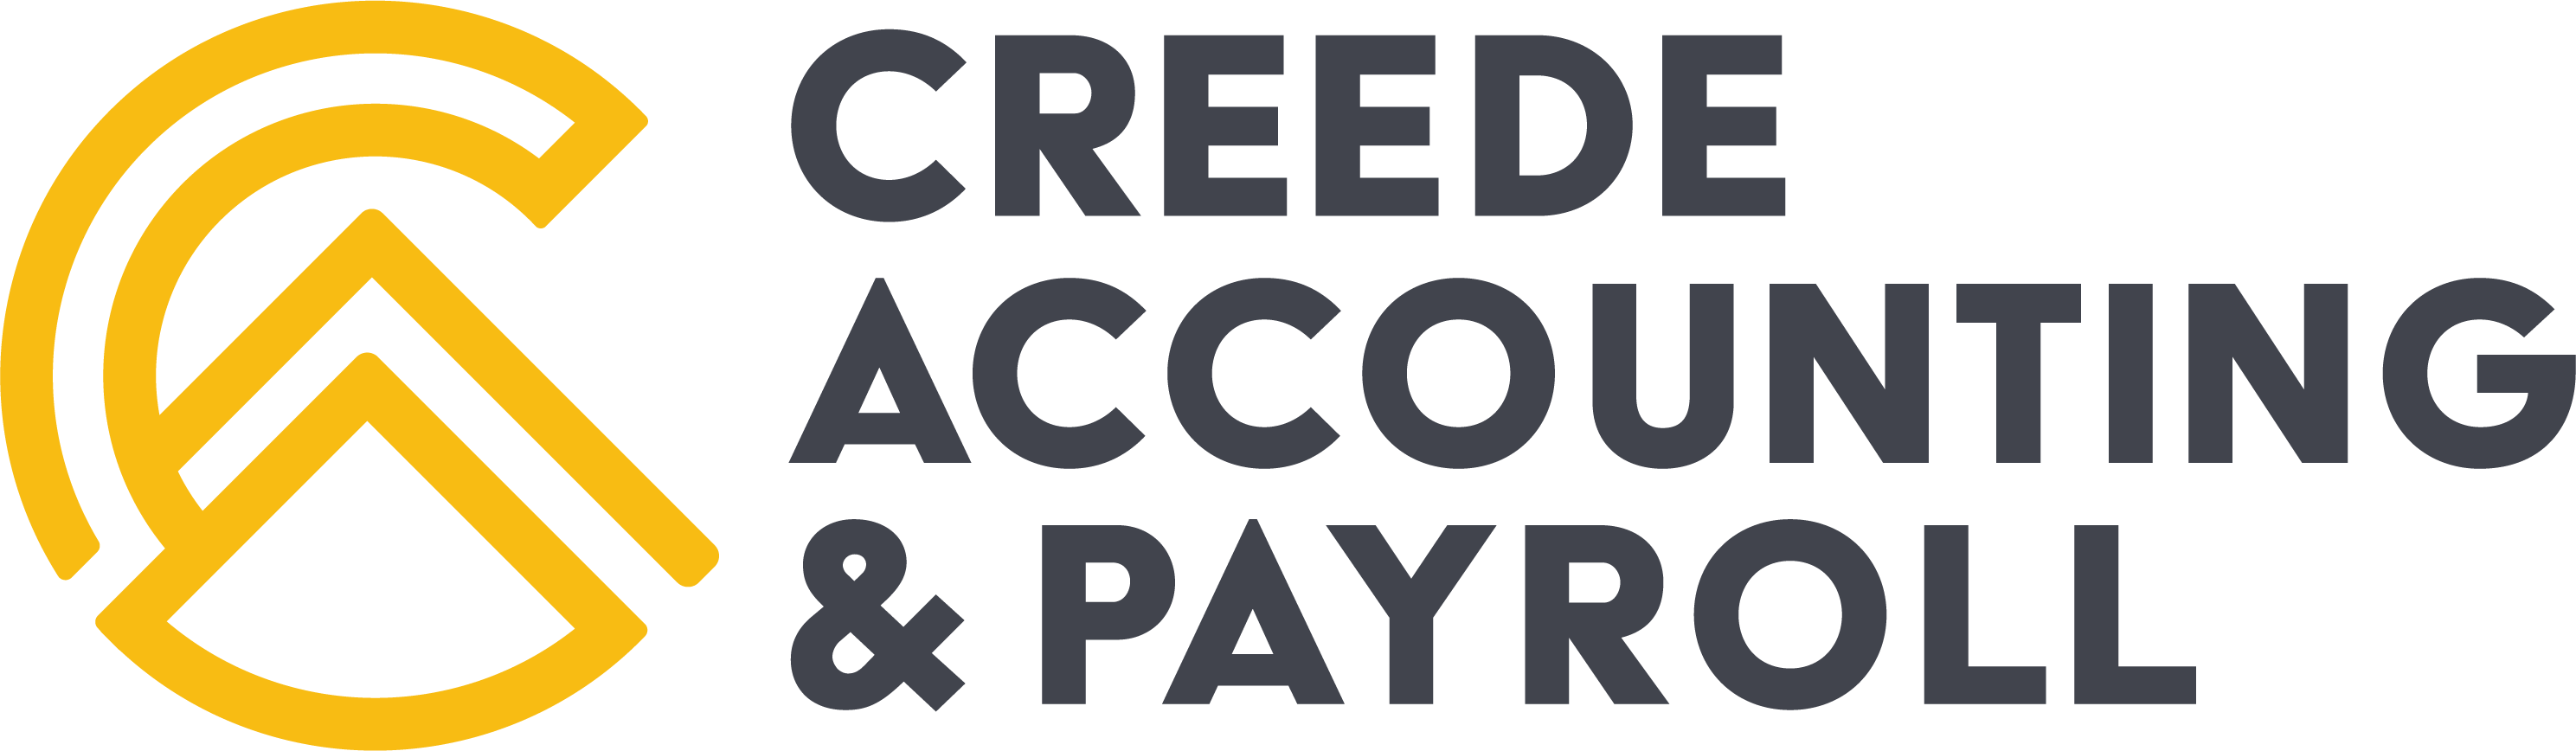 Creede Accounting & Payroll